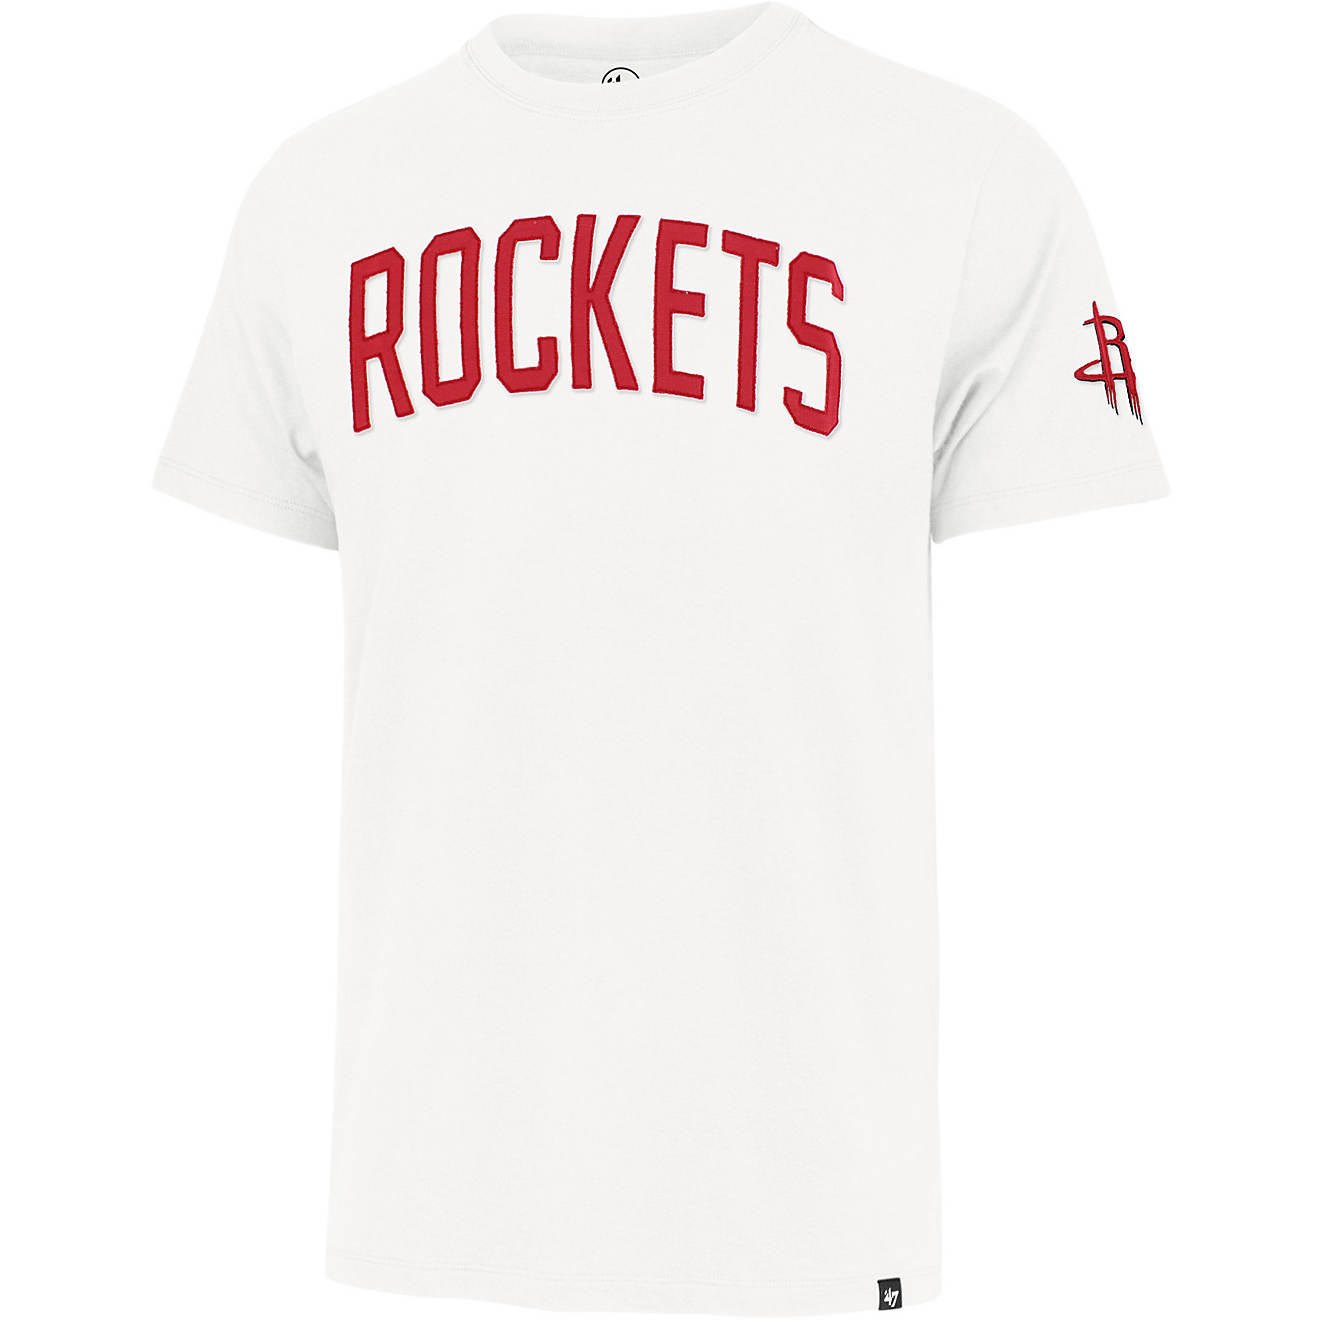 rockets t shirt